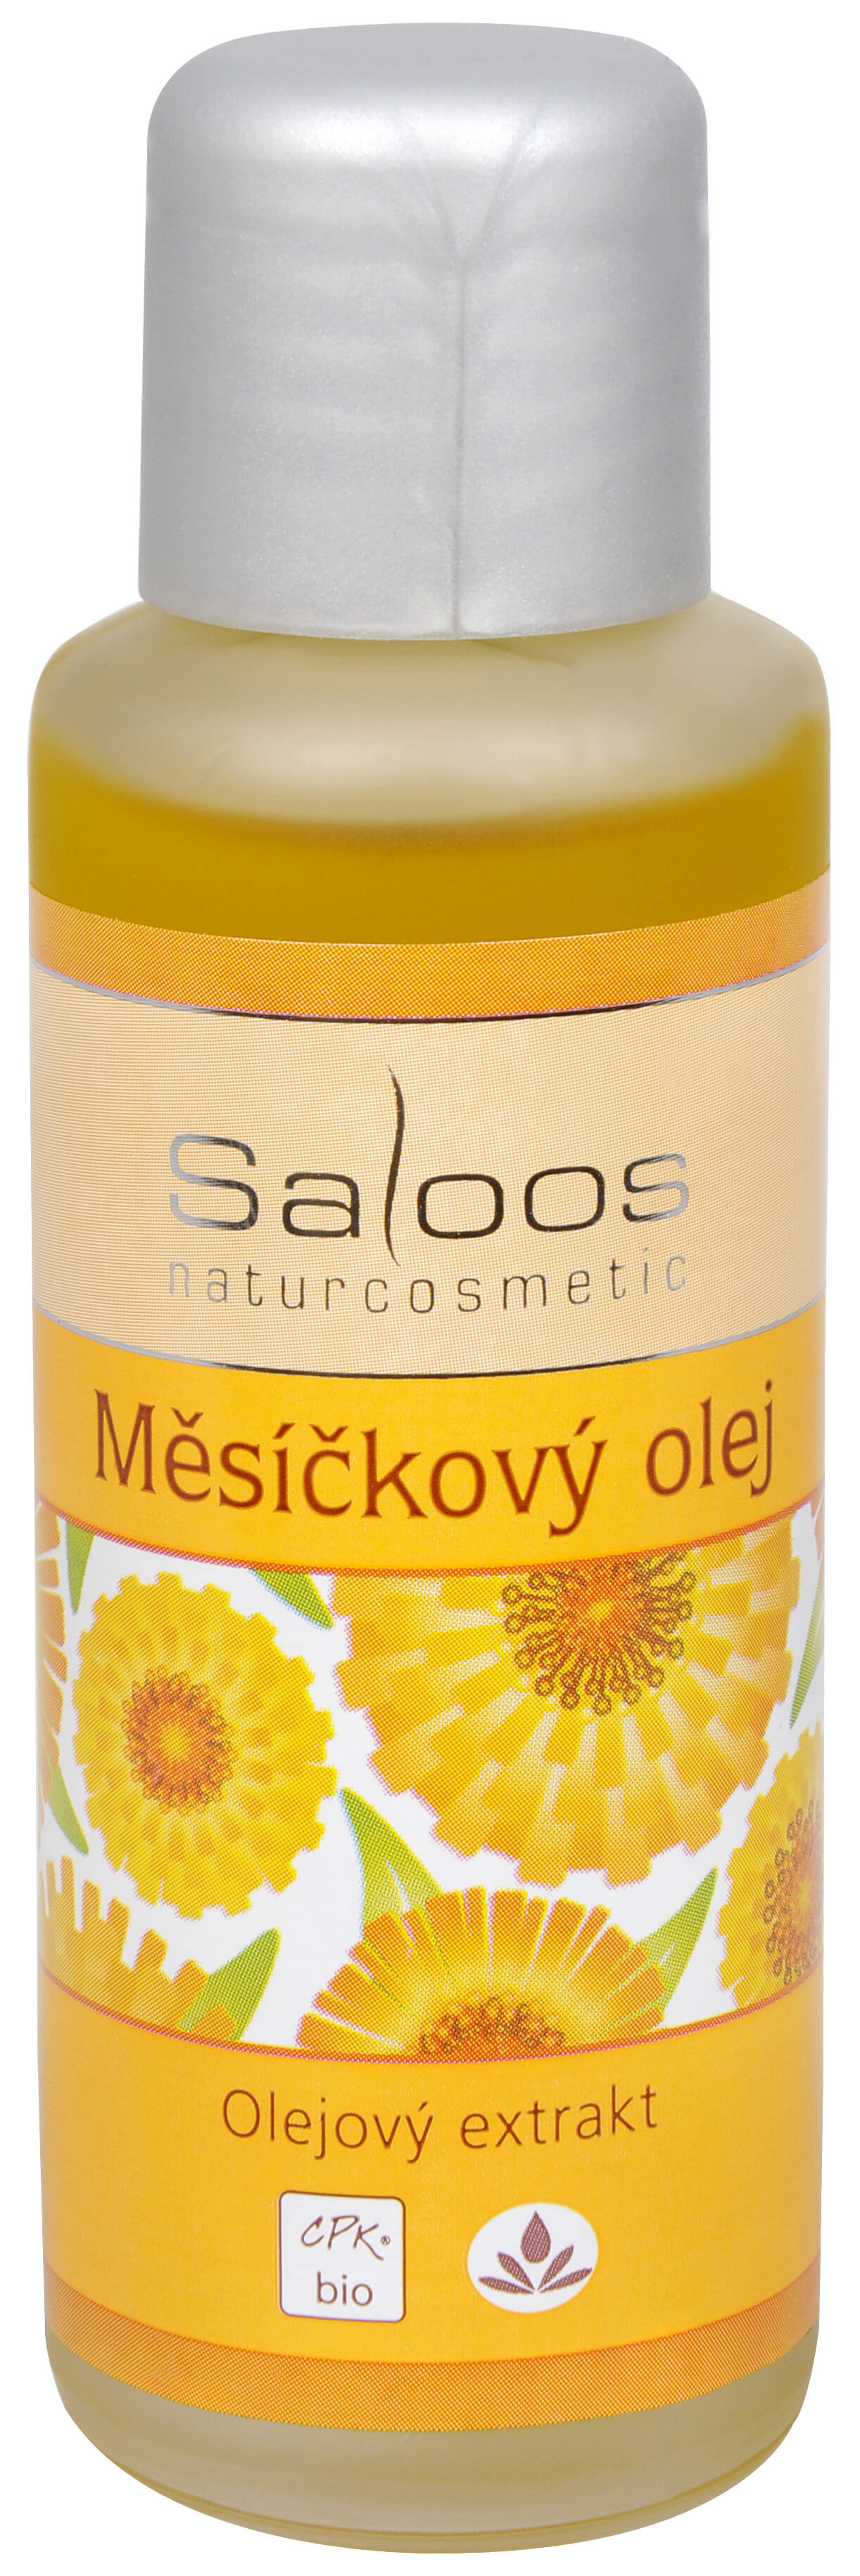 Zobrazit detail výrobku Saloos Bio Měsíčkový olej (olejový extrakt) 250 ml